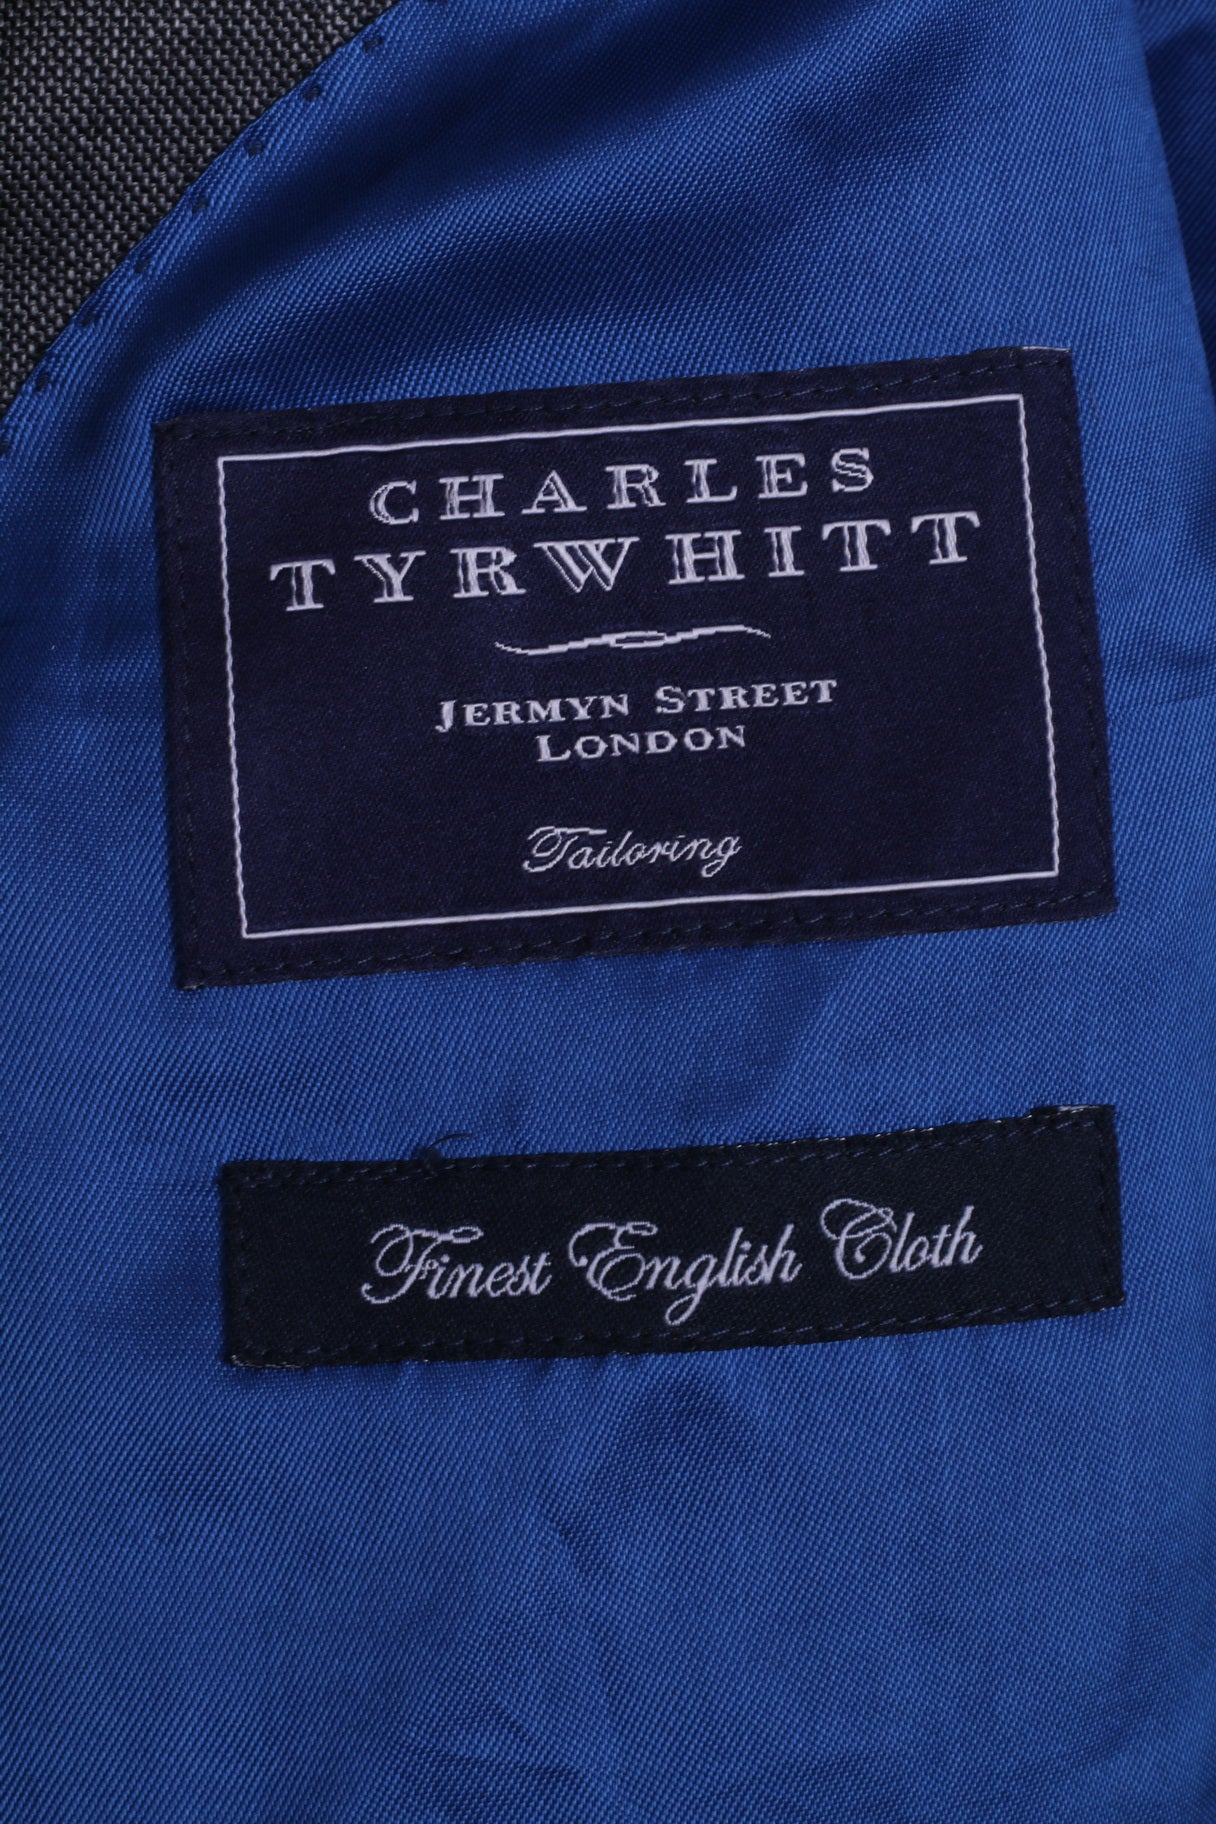 Charles Tyrwhitt Jermyn Street London Giacca blazer da uomo 44 L in lana grigia